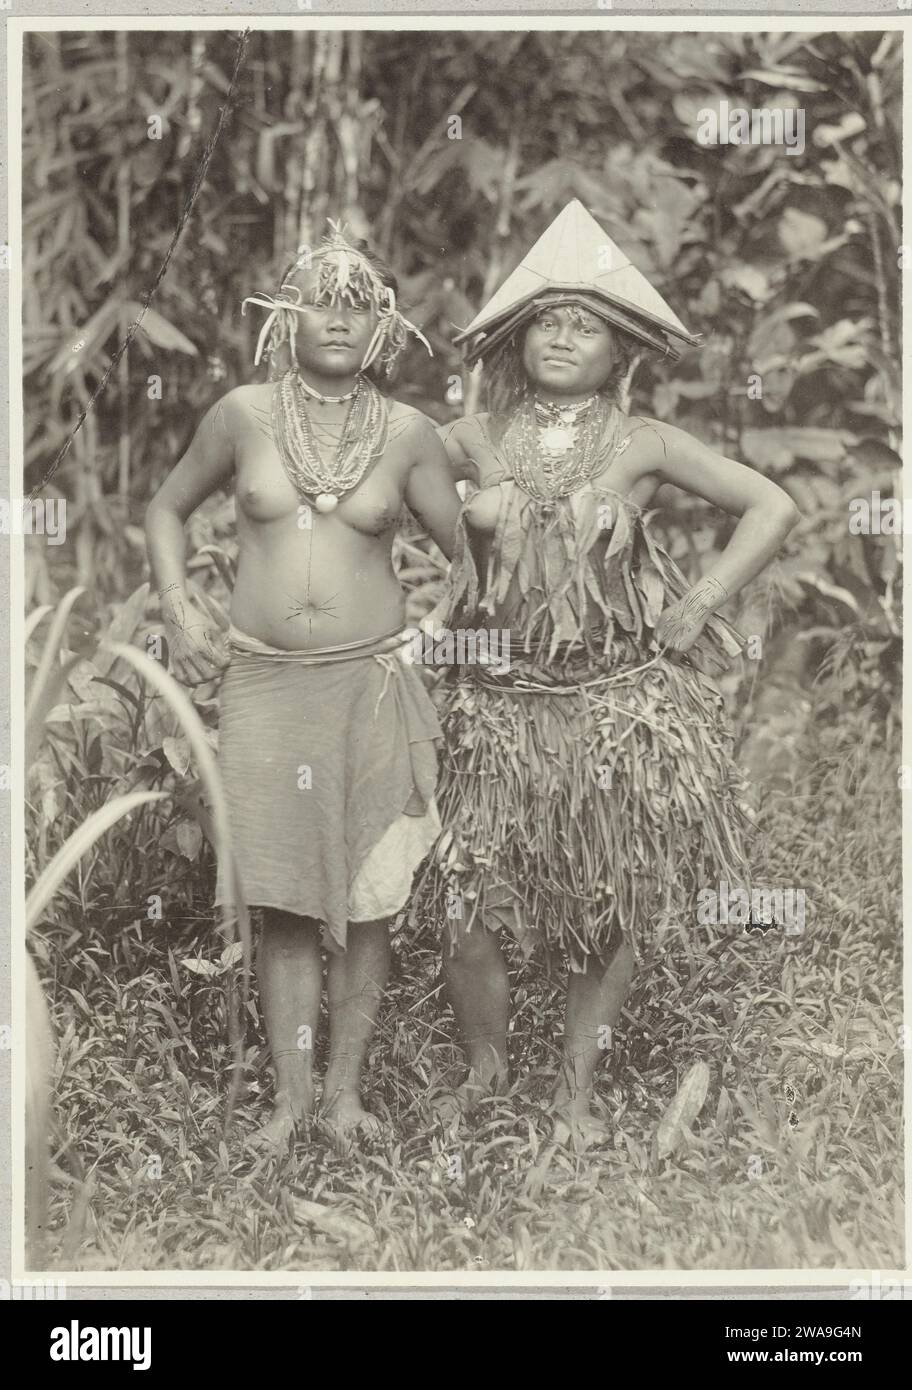 Porträt von zwei unbekannten jungen Frauen auf Pagai in der Gestation der Insel, 1891 - 1912 Foto zwei junge Frauen auf Pagai in der Gestation der Insel. Das rechte Mädchen trägt einen Korbrock und das linke trägt ein Tuch um die Taille. Auf dem Kopf tragen sie Verzierungen mit einem dreieckigen Hut und einem Stirnband mit einem Schilf darunter. Beide Frauen tragen Halsketten. Mentawai-Eilanden Papieralbumendruck anonyme historische Personen, dargestellt in einem Doppelporträt - BB - Frau. Volkstracht, regionale Tracht Mentawai-Eilanden Stockfoto